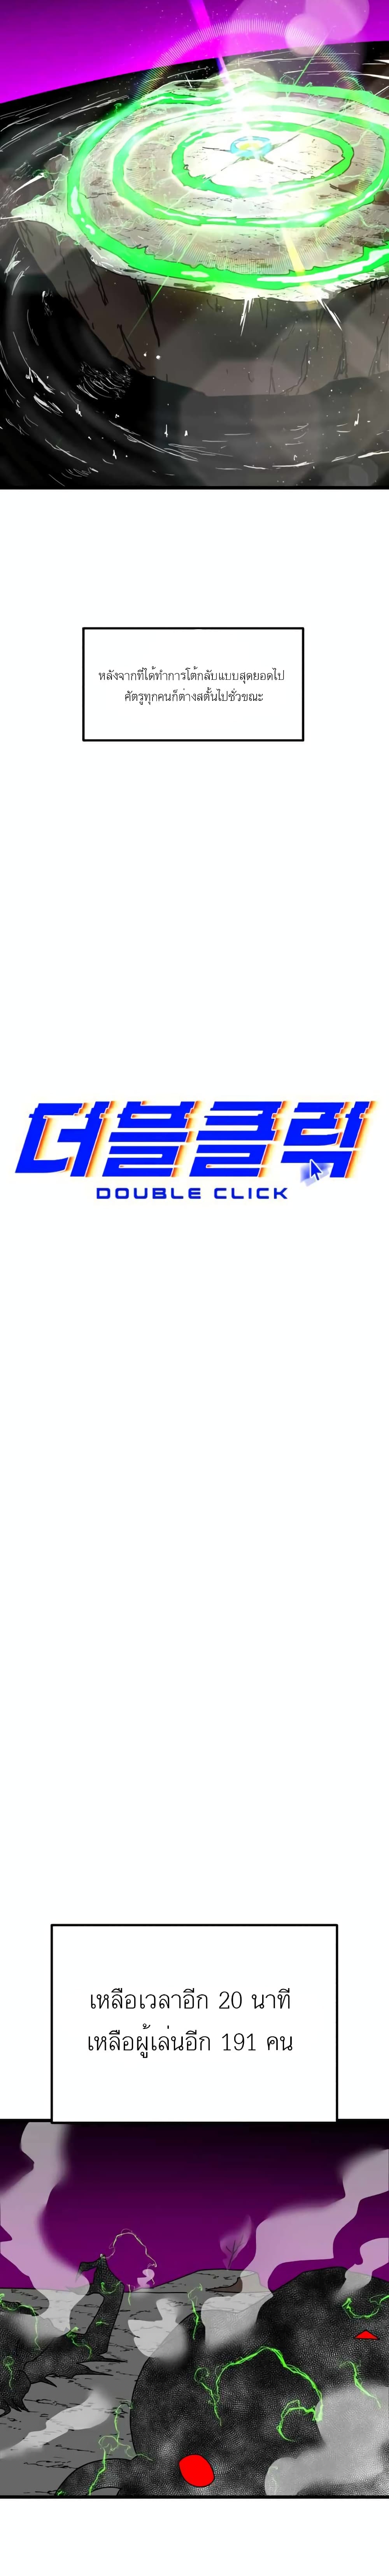 Double Click ตอนที่ 36 (19)